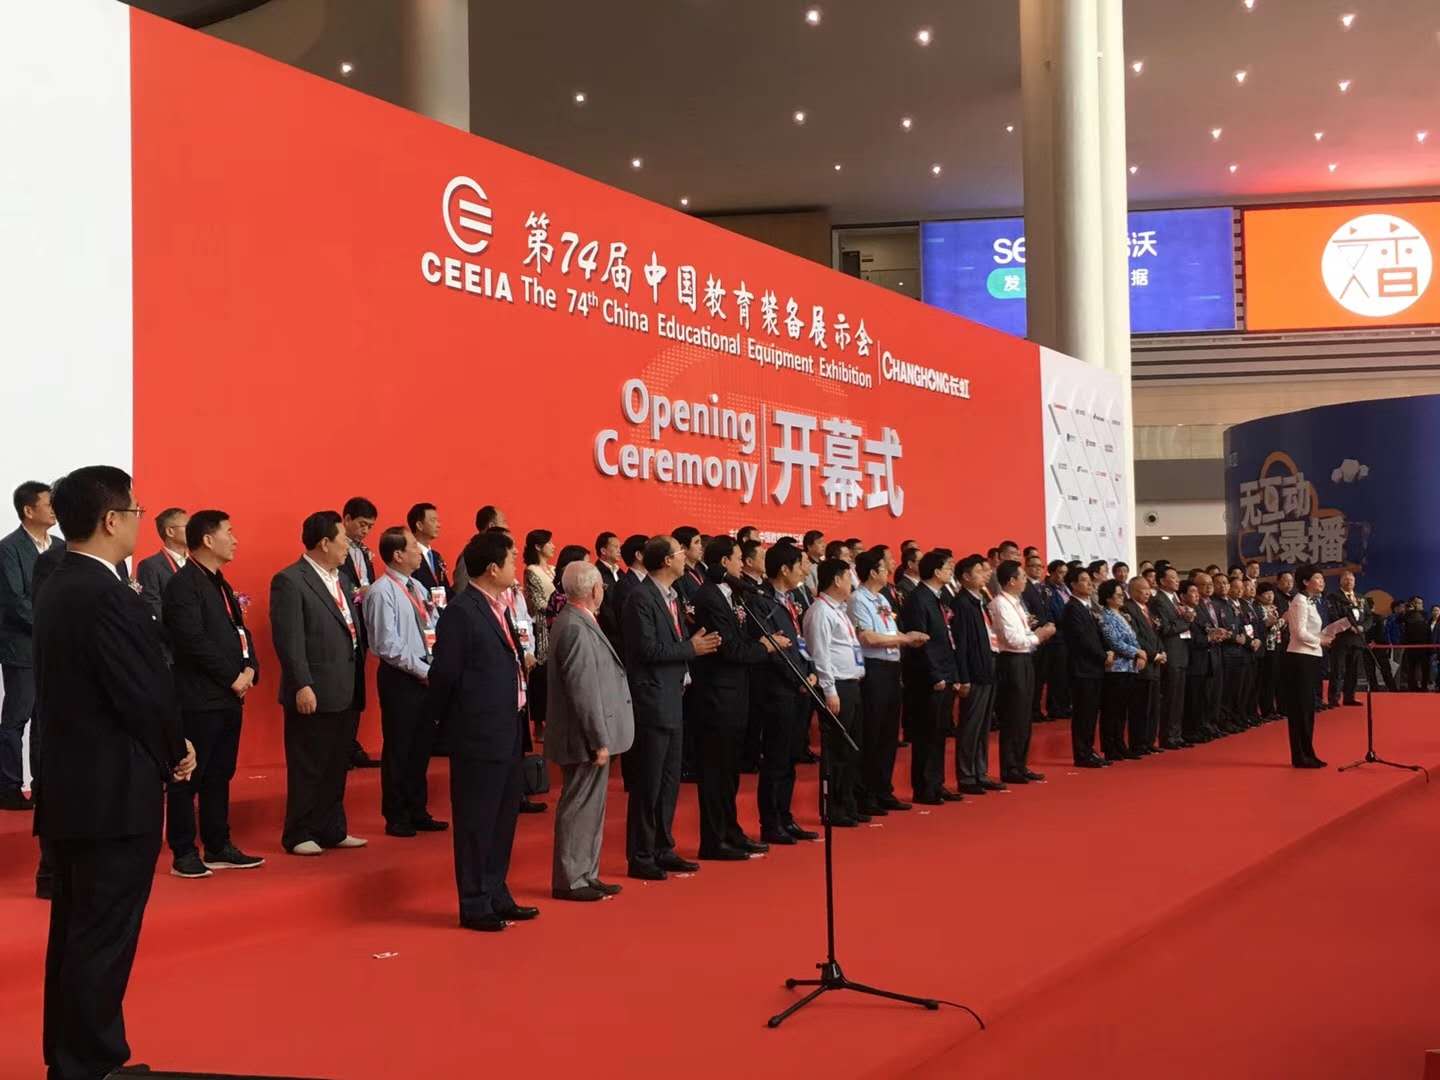 林泽科技第74届成都中国教育装备展示会